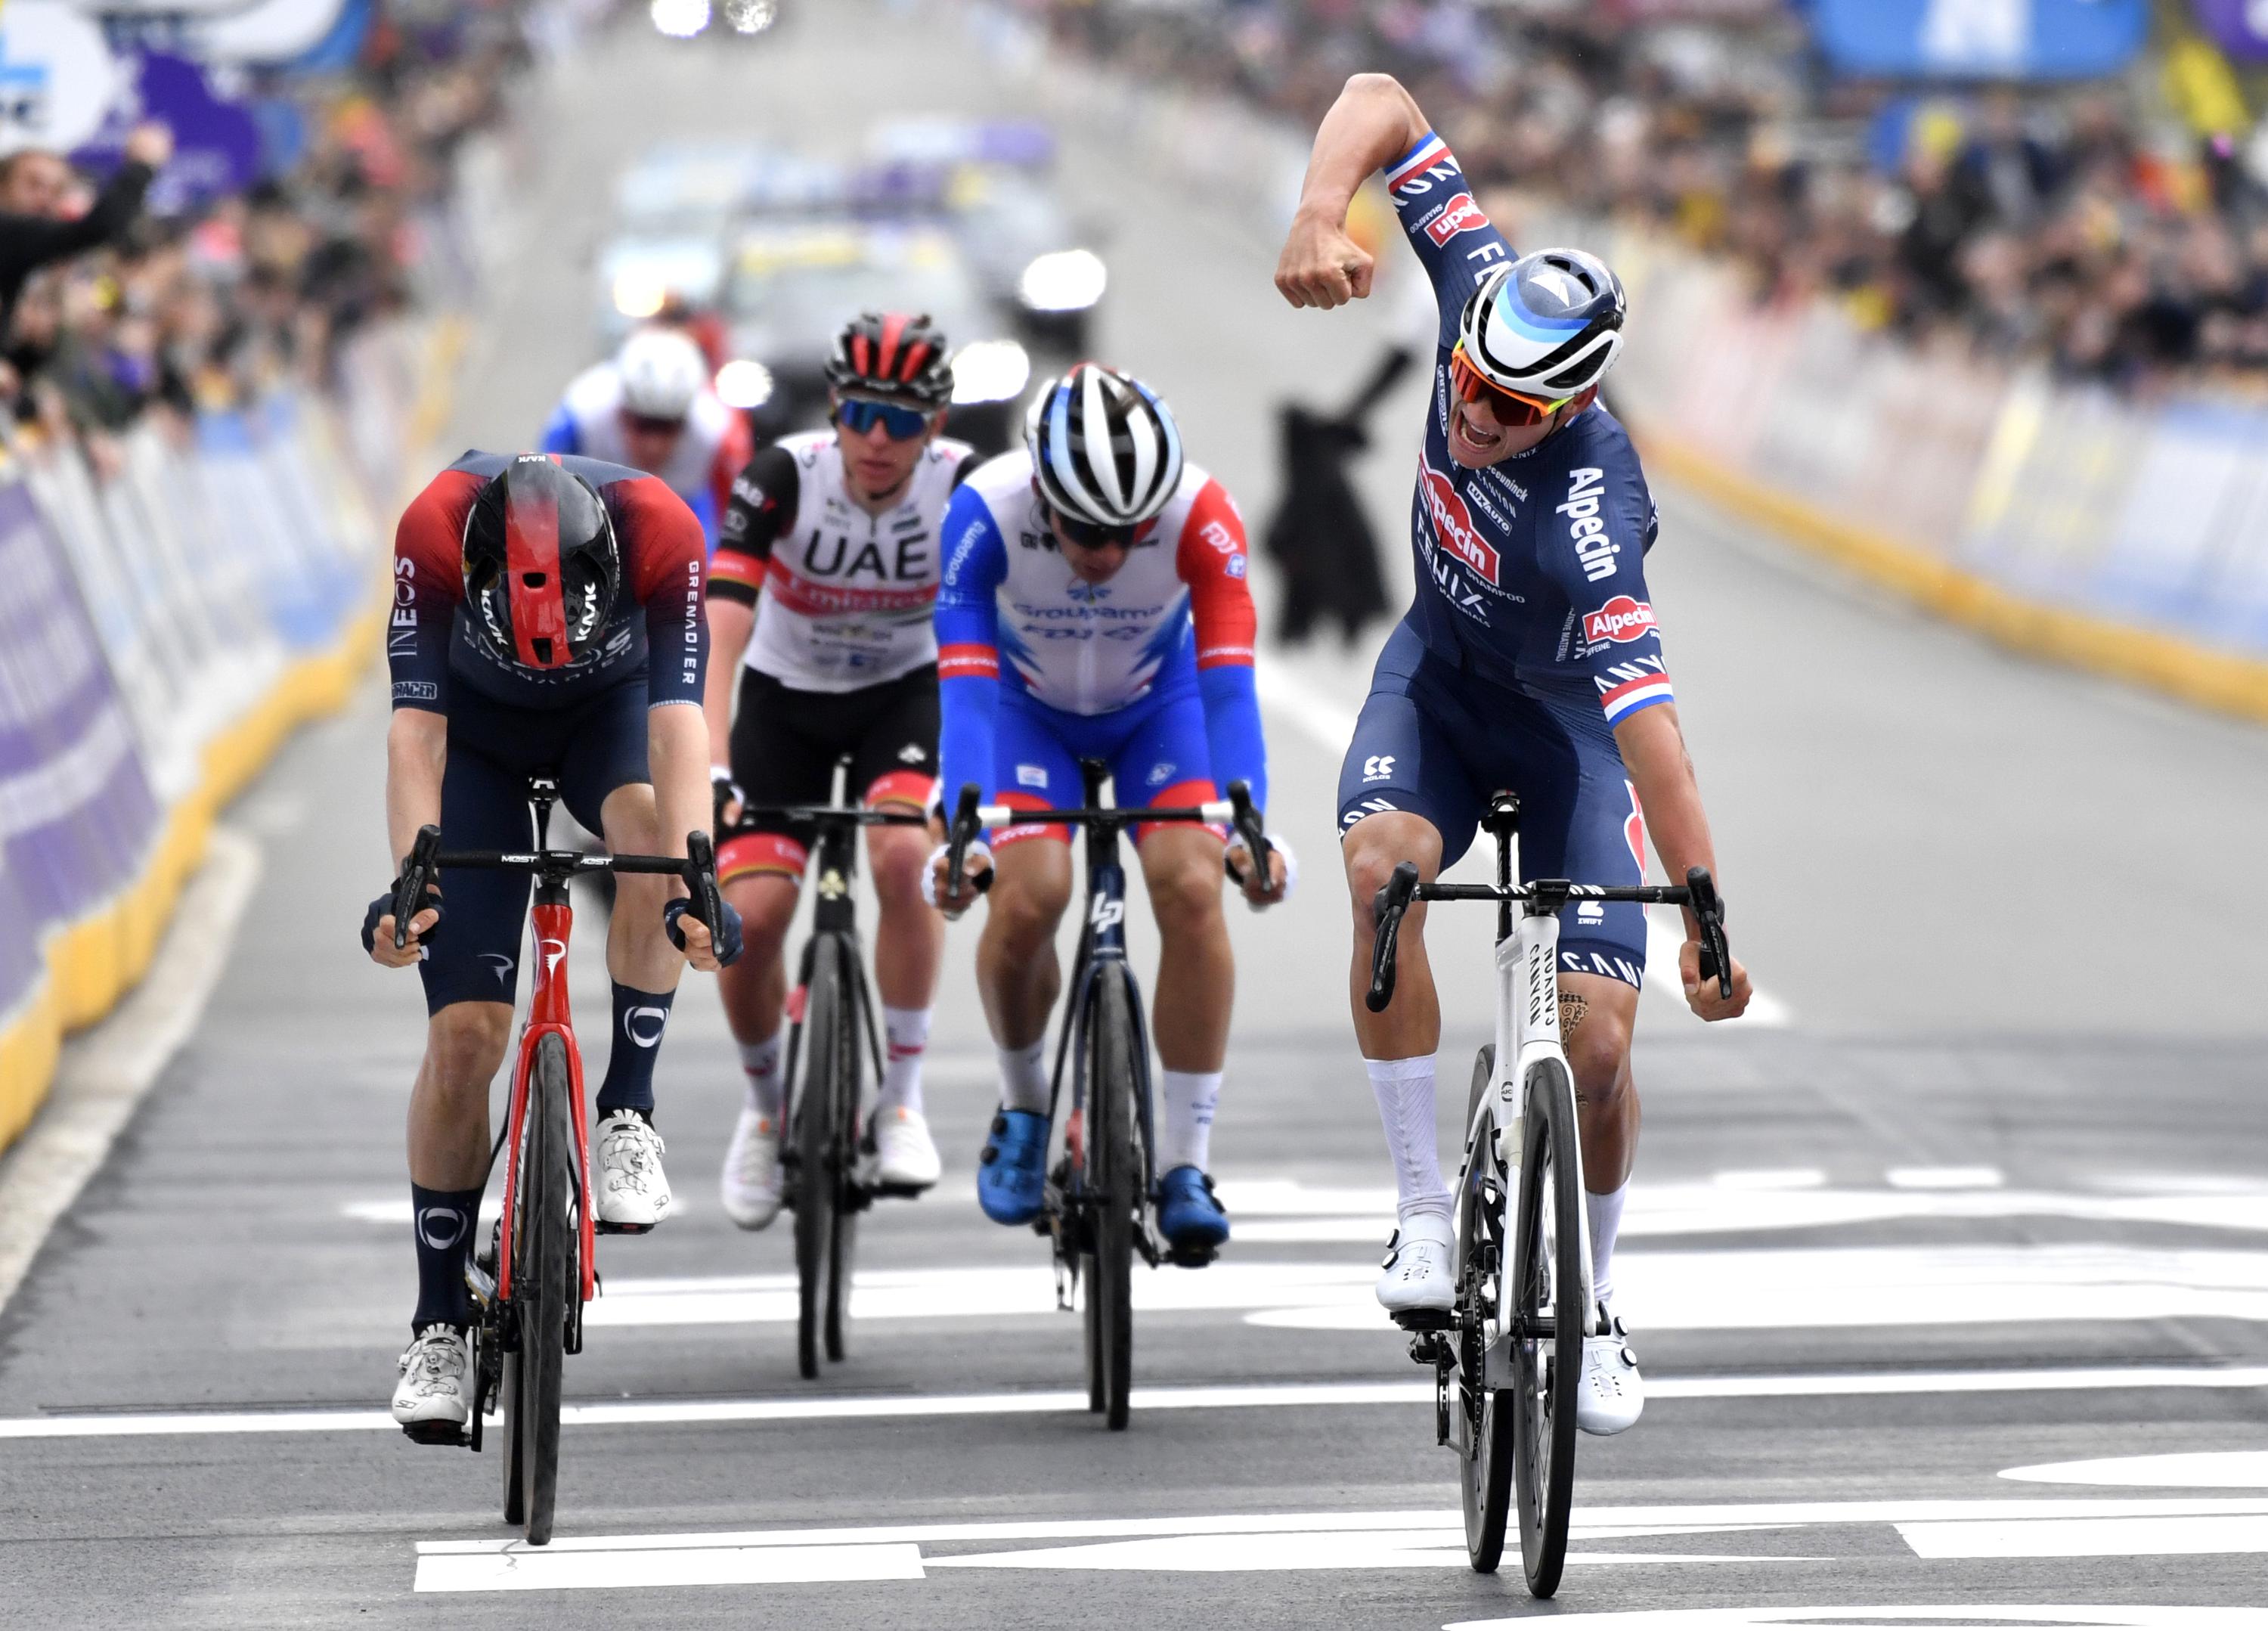 Matthew van der Poel remporte le Tour des Flandres pour la deuxième fois